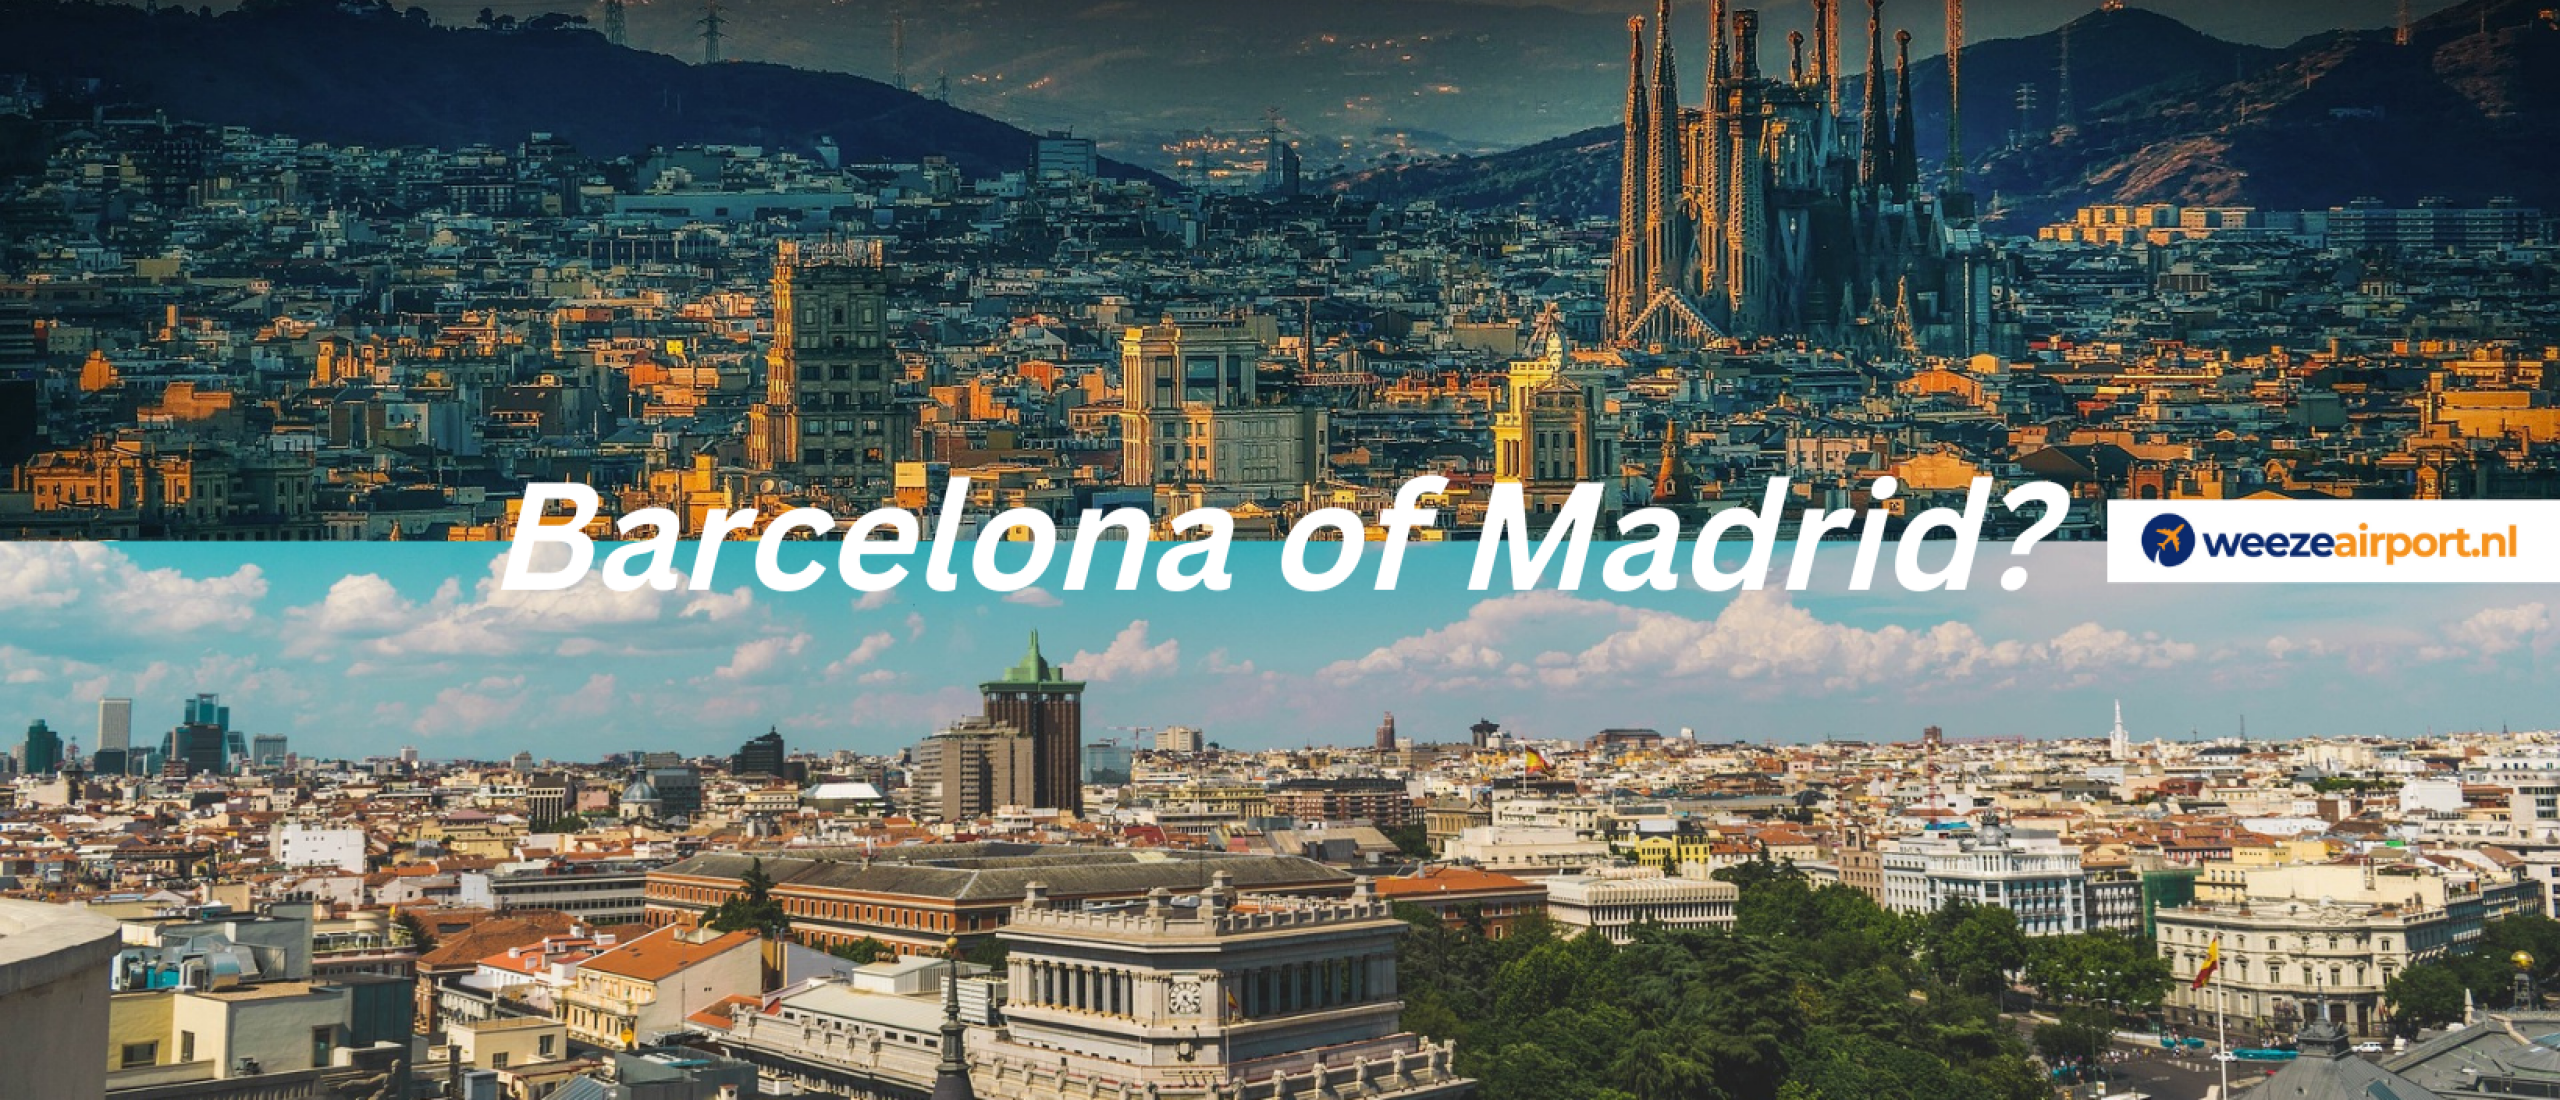 Stedentrip naar Barcelona of Madrid? De 7 grootste verschillen - Welke stedentrip past bij jou?